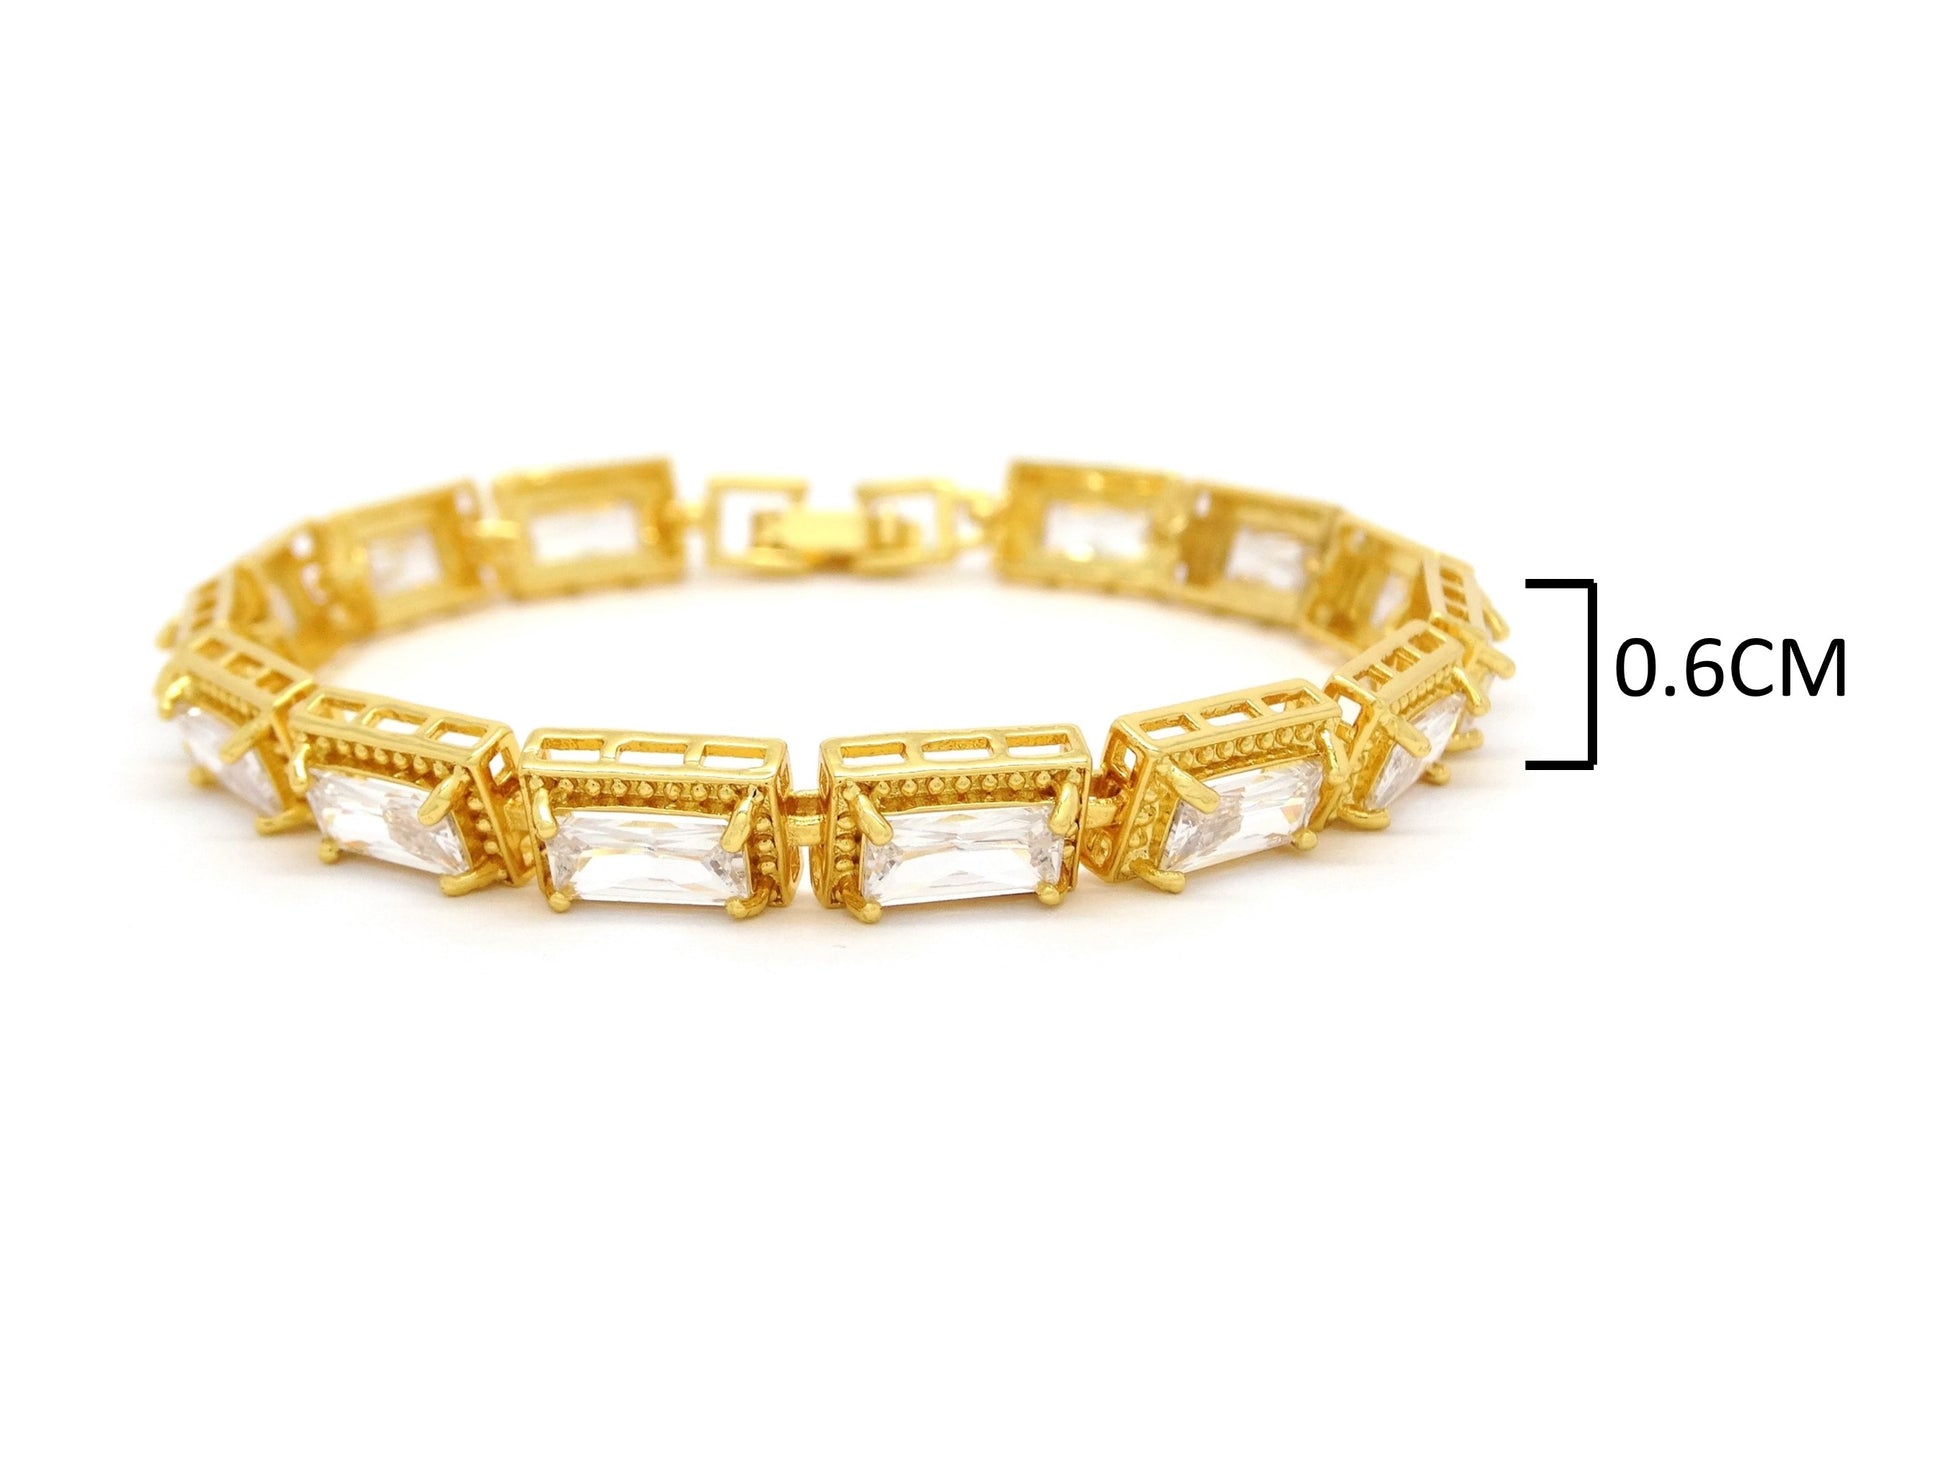 Yellow gold 14 baguette gems tennis bracelet MEASUREMENT